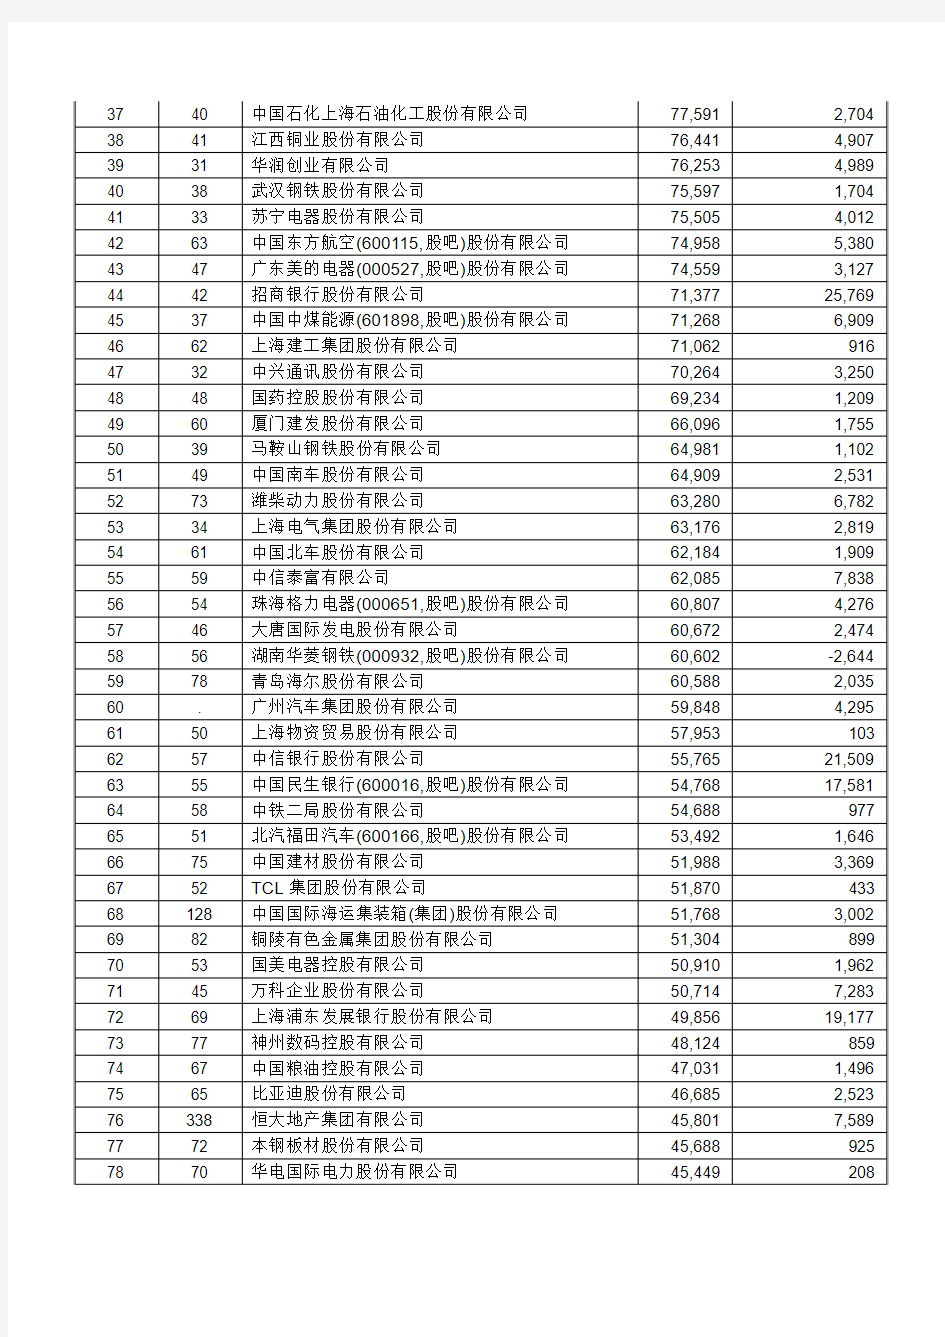 2011年中国500强企业名单